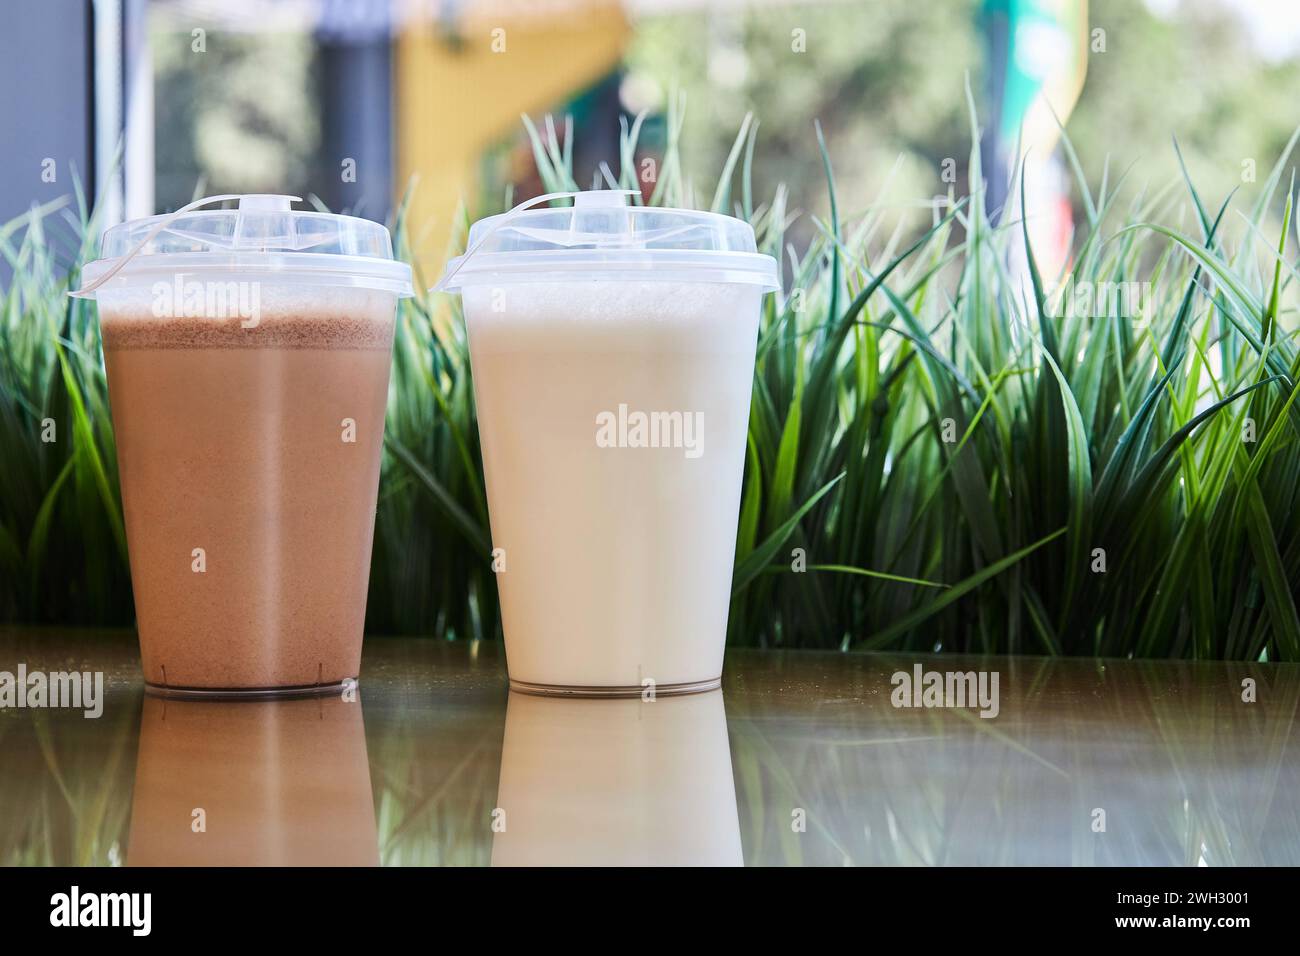 Zwei klare Plastikgläser mit Deckel gefüllt mit Schokoladenvanilla-Milchshakes auf dem Tisch, grünes Gras. Leeres Modell, Hintergrundgetränk-Café. Mitnehmen Stockfoto